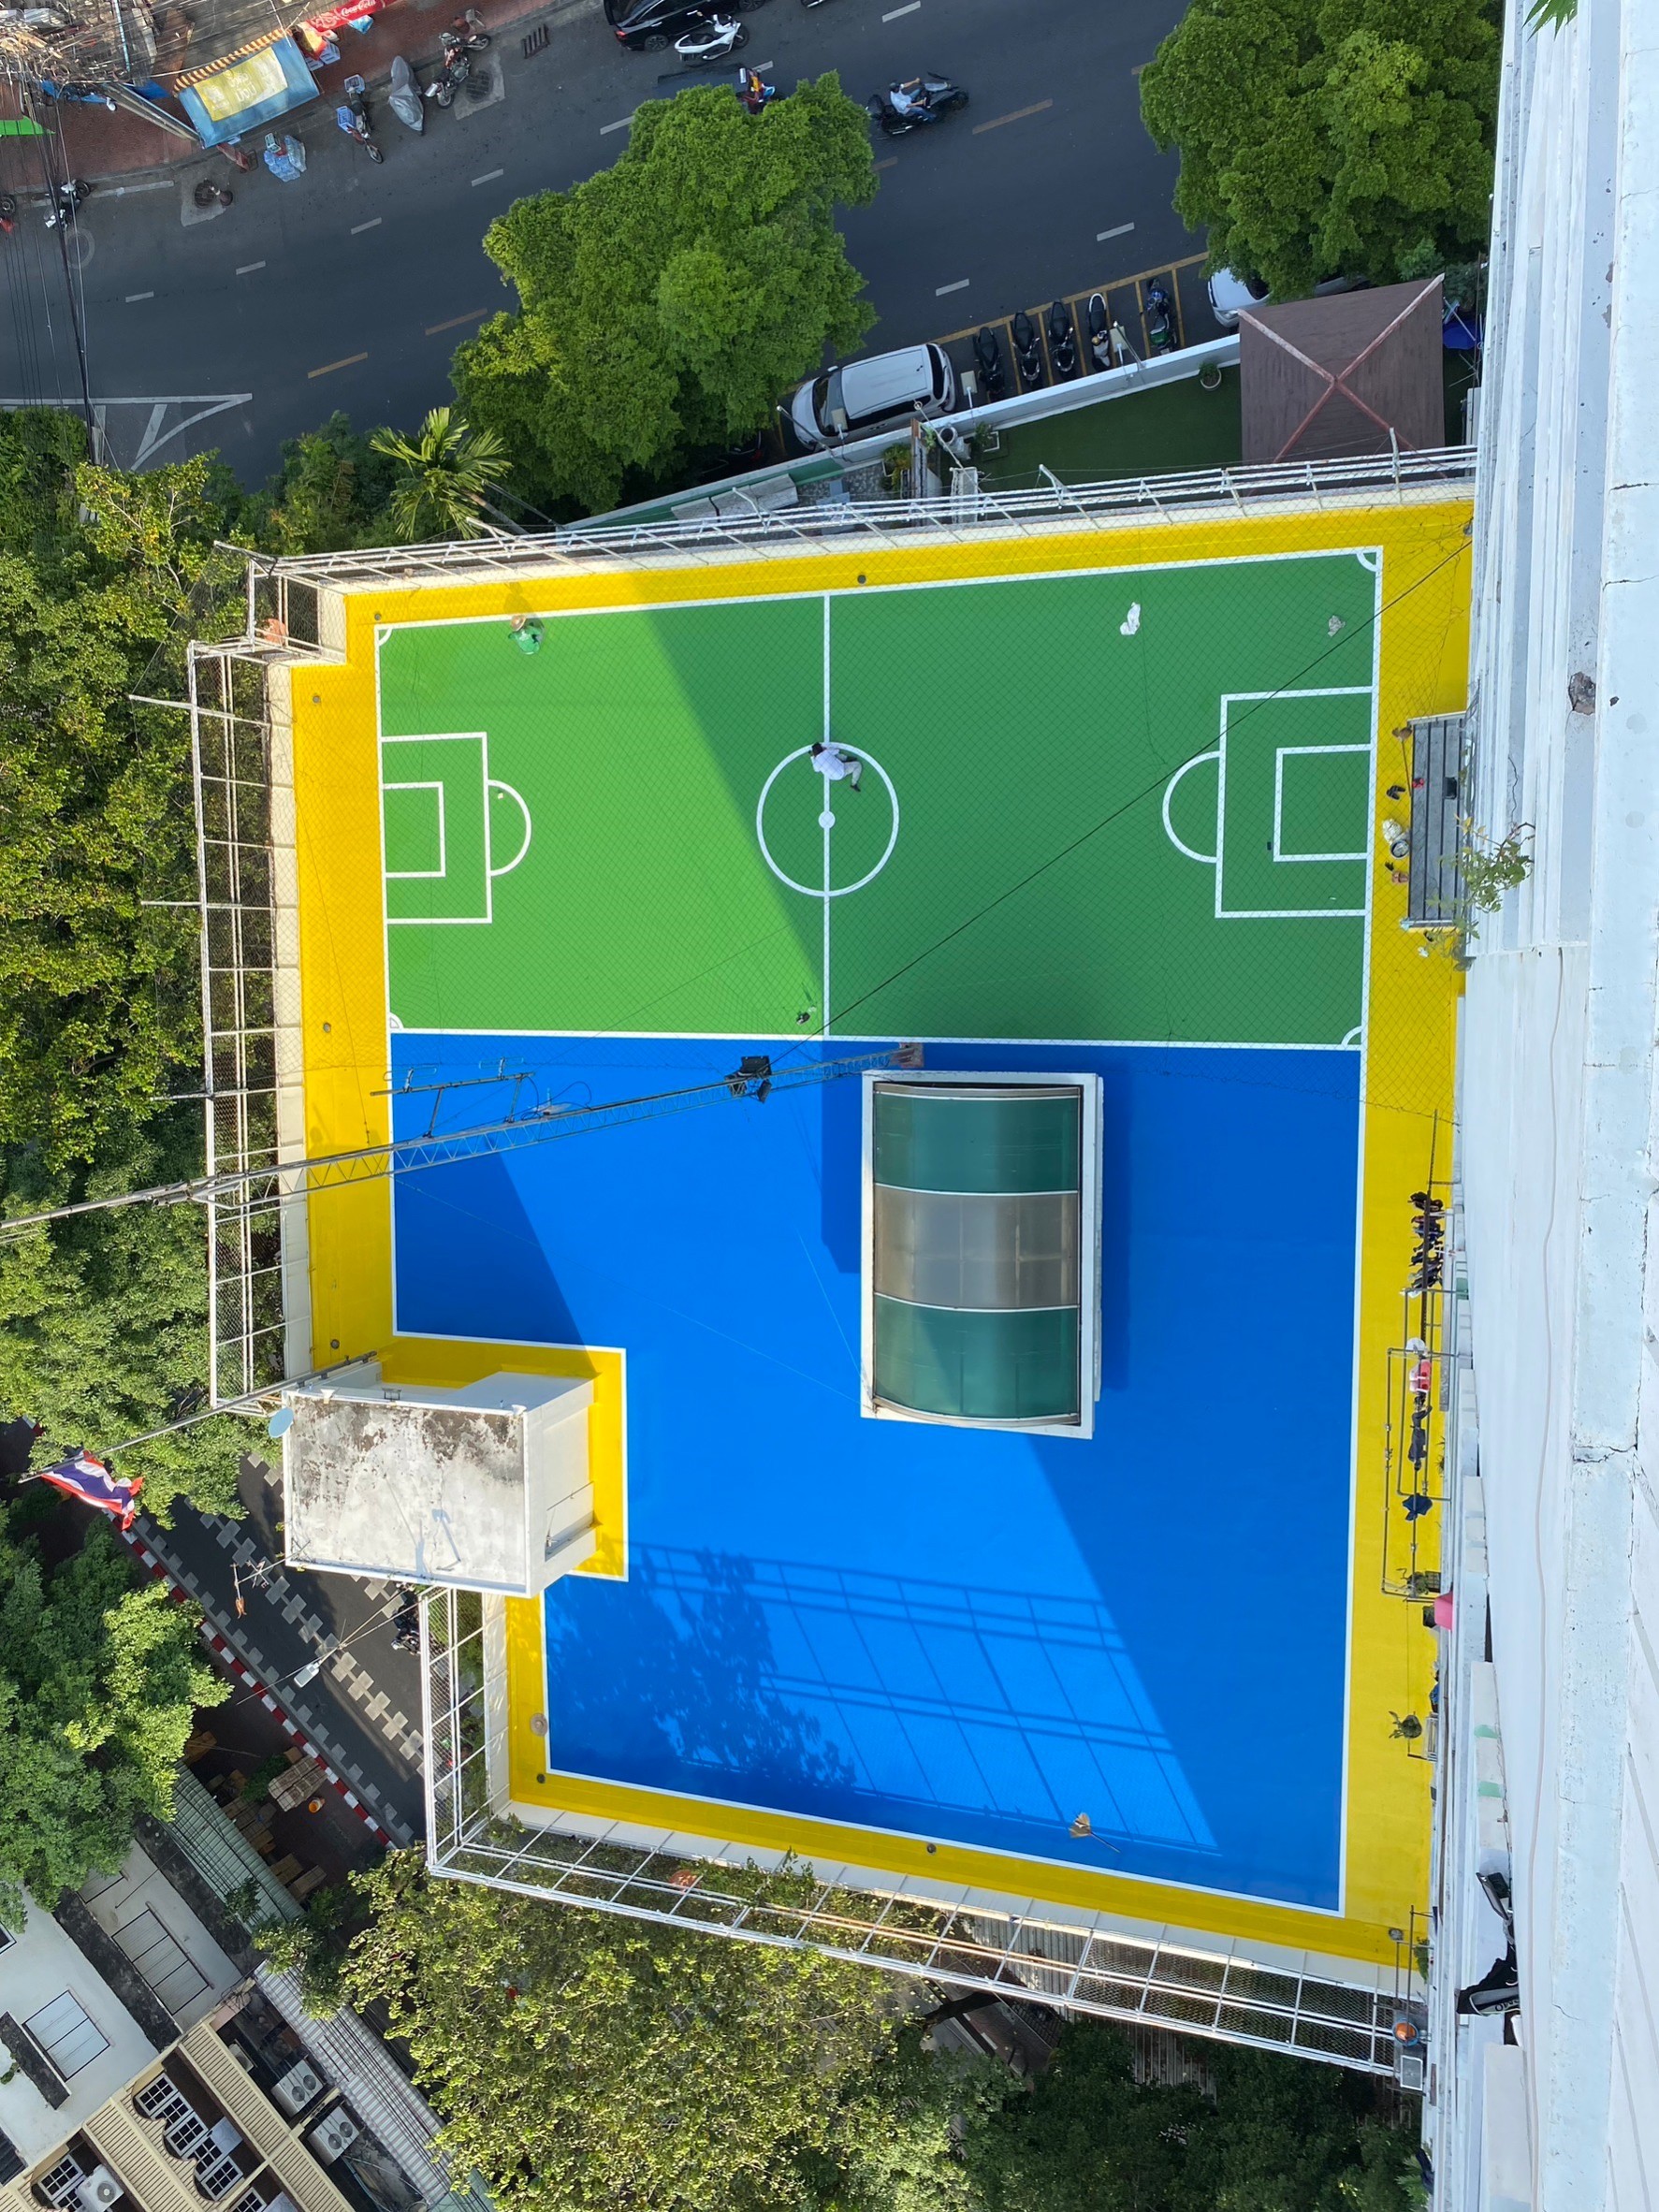 Sport floor (พื้นสนามกีฬา)